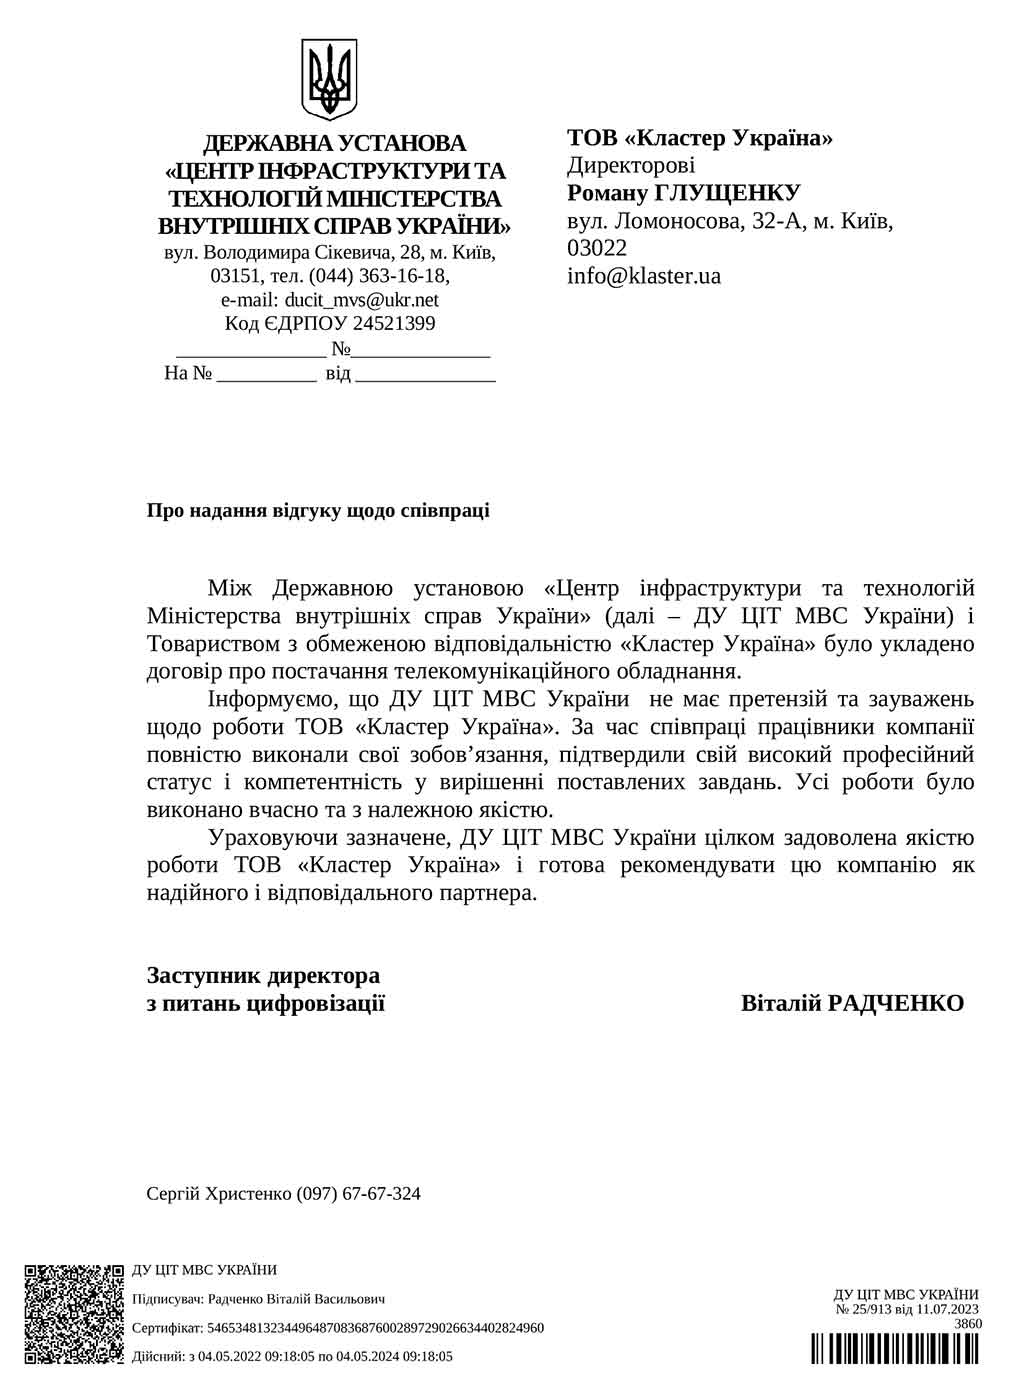 Рекомендательное письмо от ГУ «ЦИТ МВД Украины»